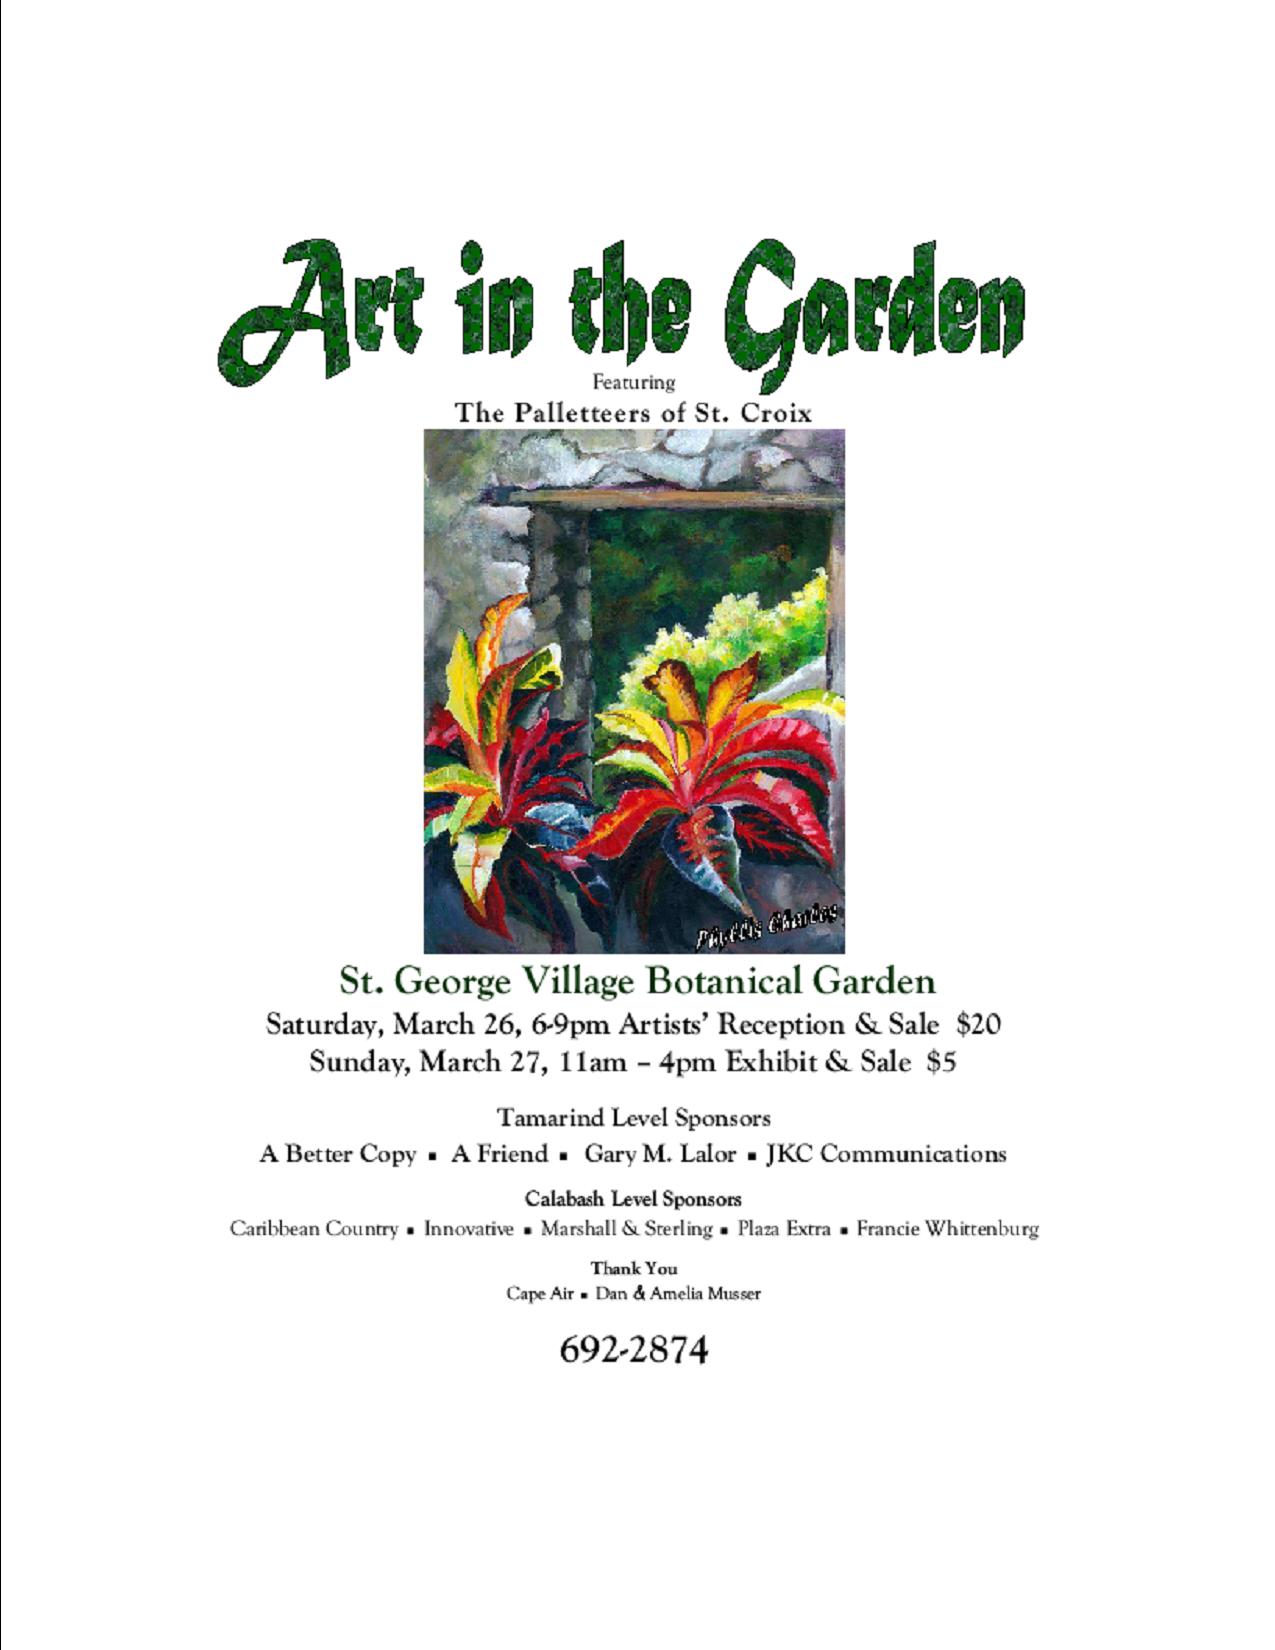 St. George Village Botanical Garden Presents Art in the Garden